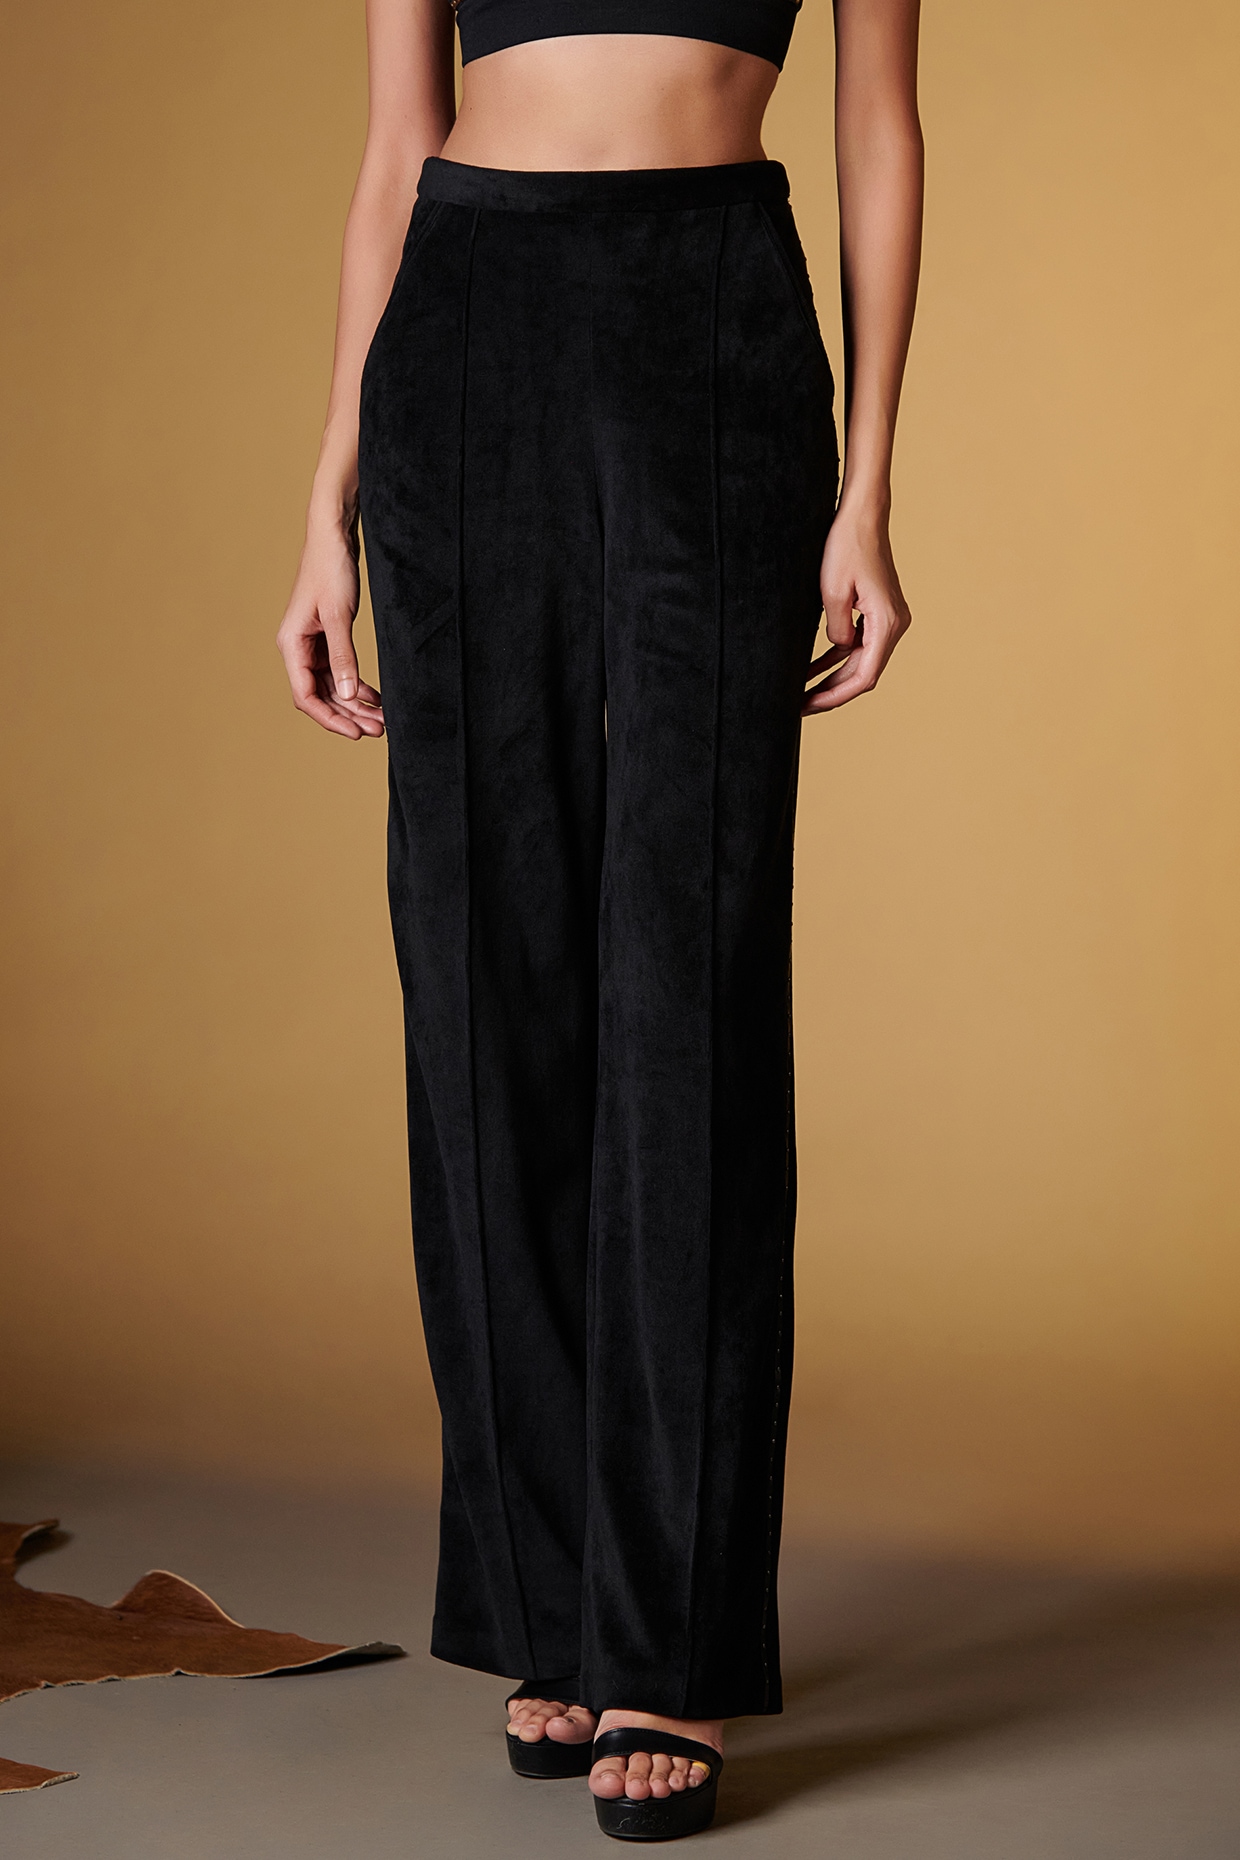 Zara Gray High Waisted Velvet Pants. Size M | eBay